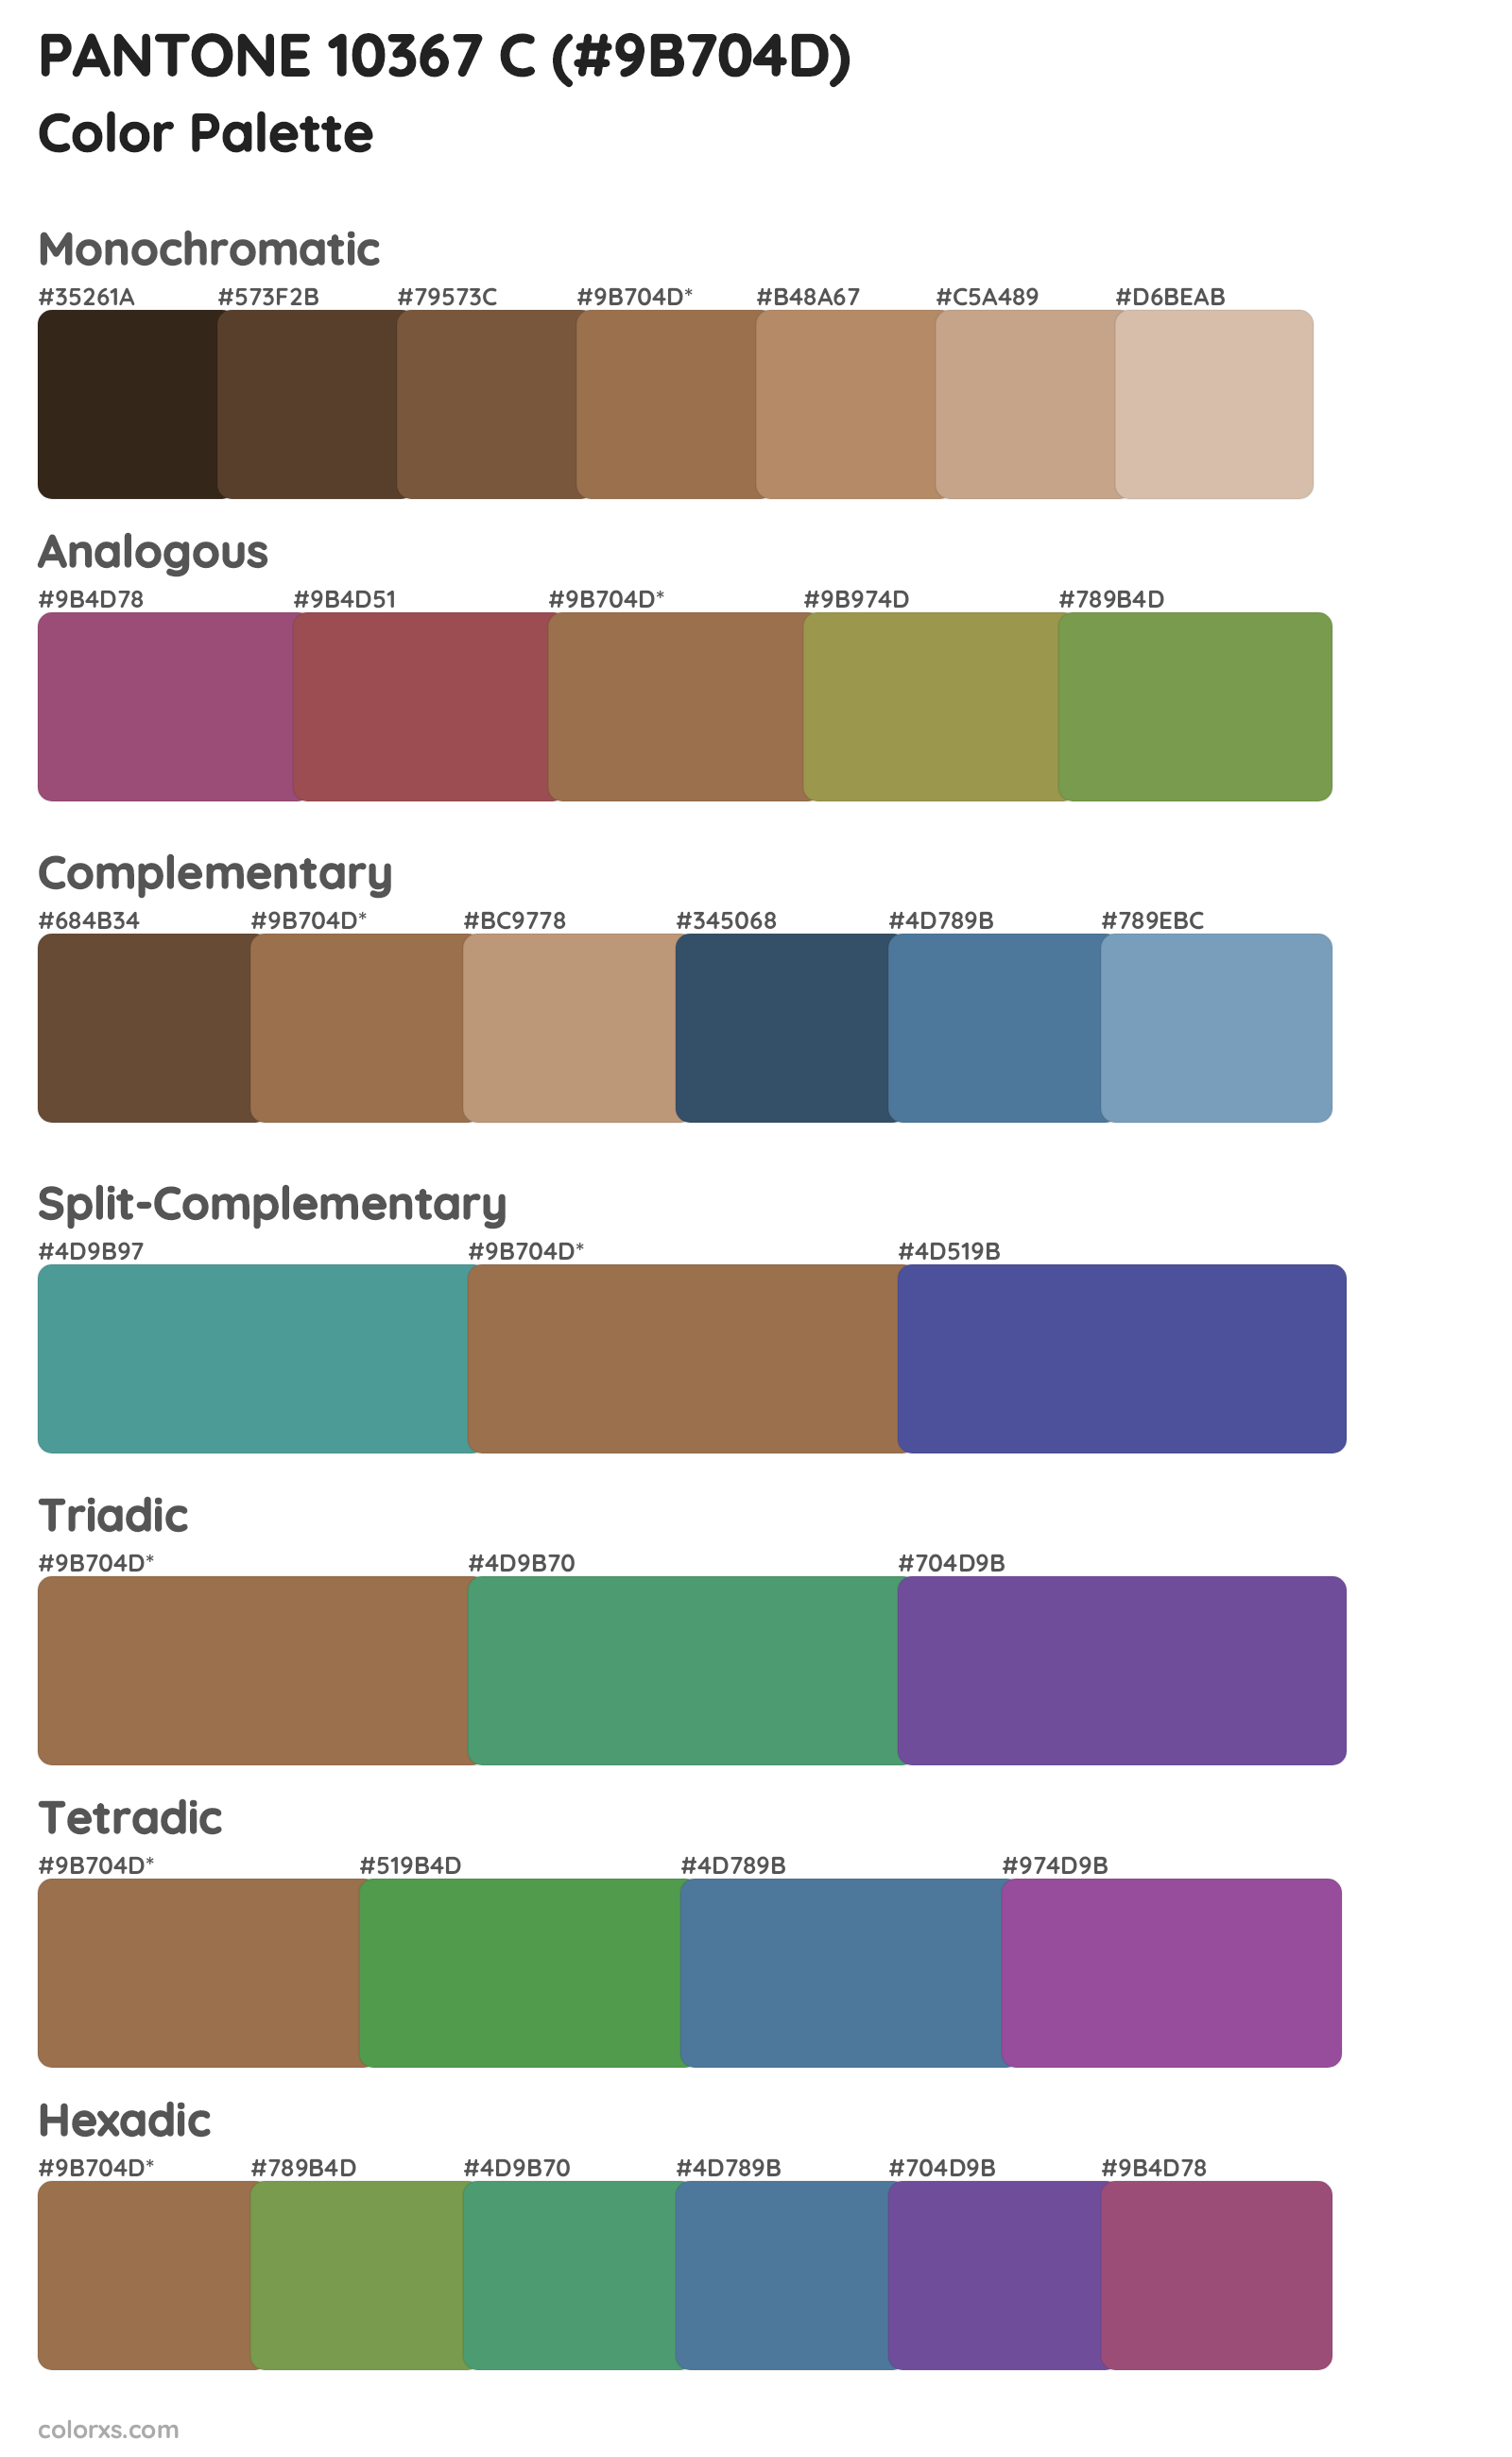 PANTONE 10367 C Color Scheme Palettes